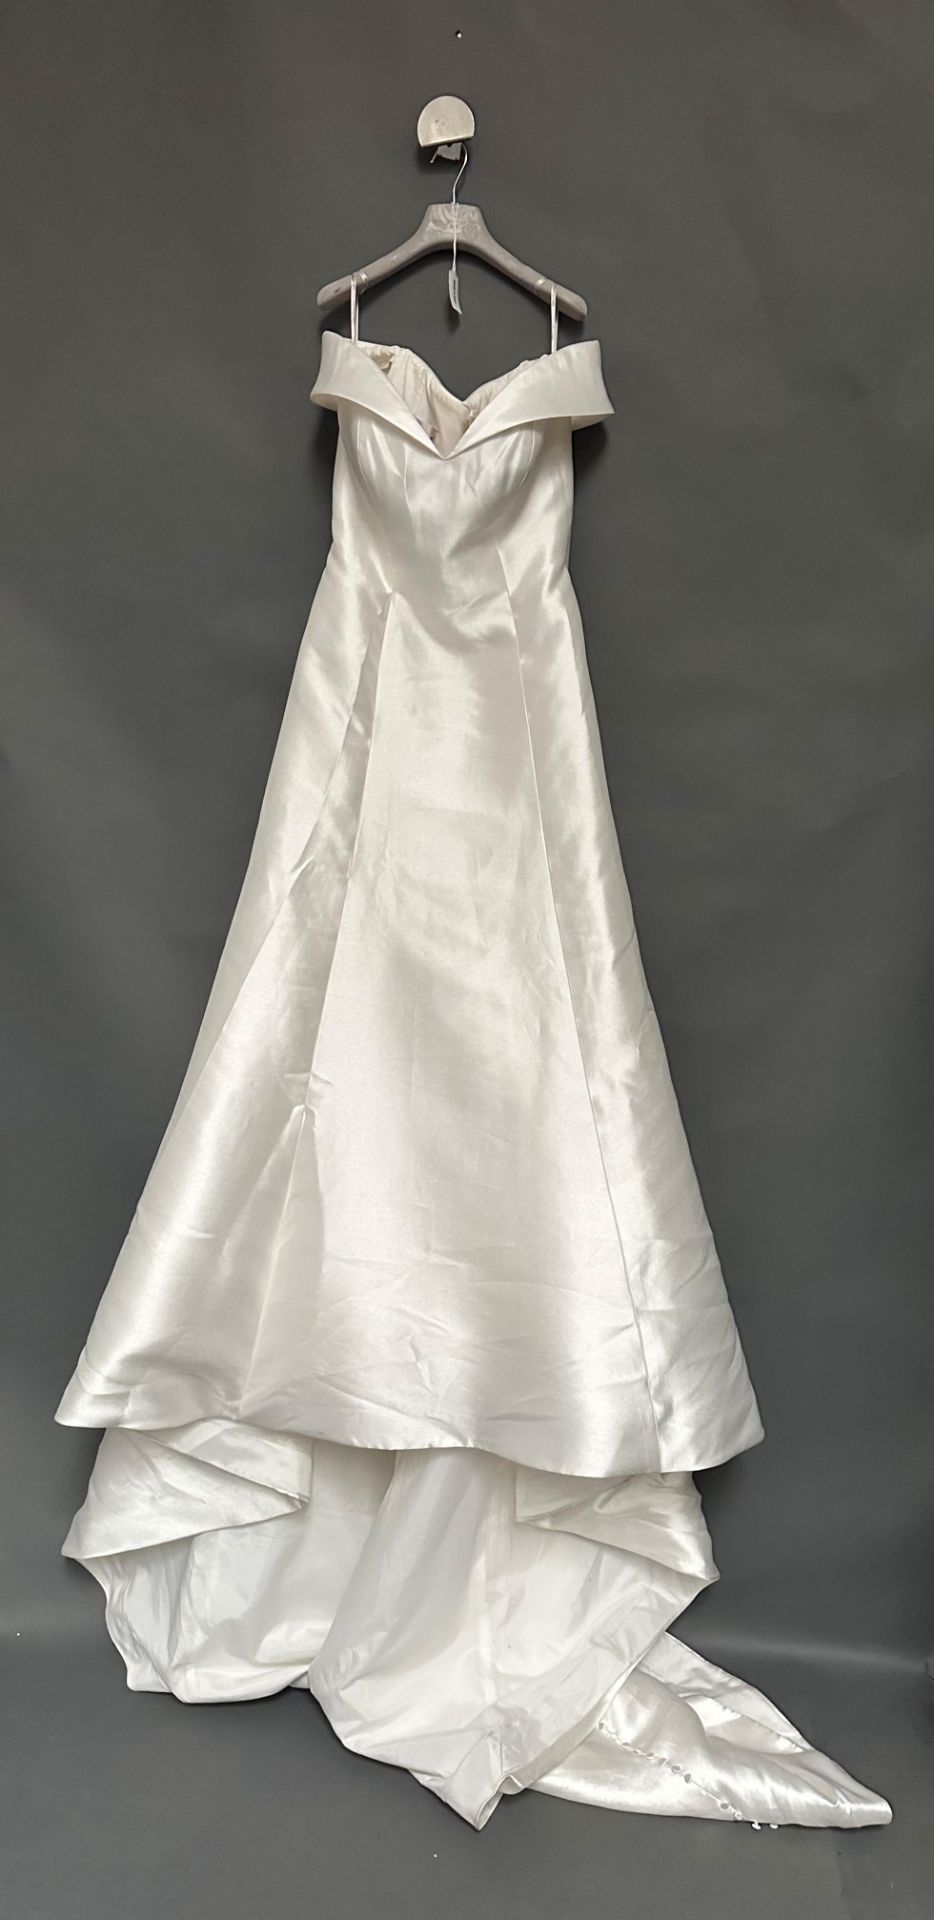 1 x REBECCA INGRAM Off The Shoulder Empire Designer Wedding Dress Bridal Gown, RRP £1,500 UK 10